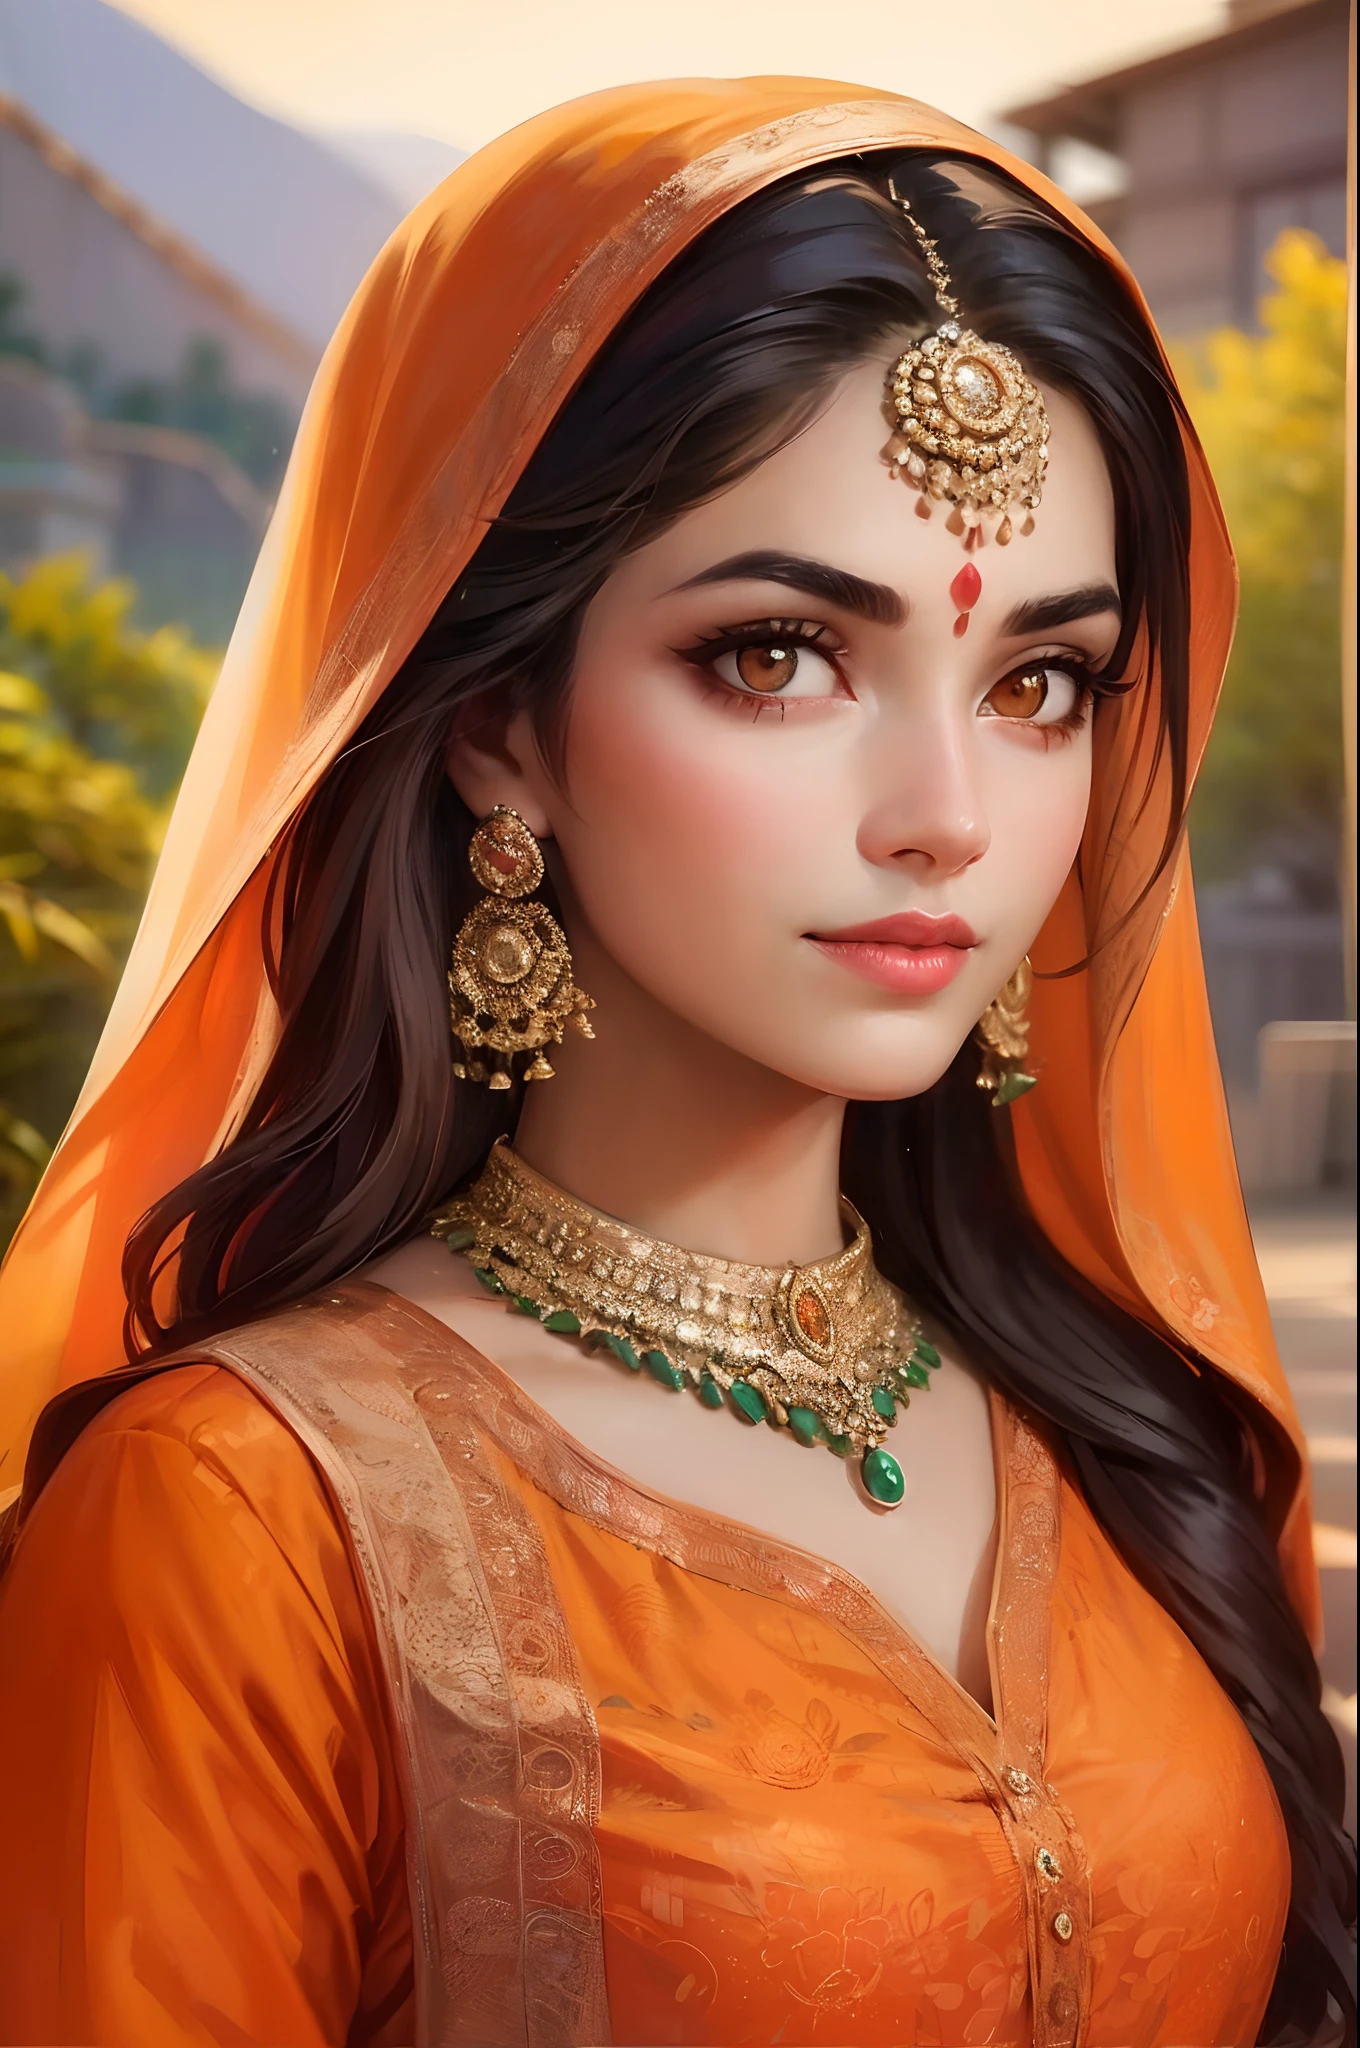 生成一幅风景如画的 30 岁美丽女人的惊艳肖像画. (漂亮的脸蛋), (漂亮脸蛋). She is wearing an elegant orange kurta that complements her 白皙的皮肤, (白皙的皮肤), (白皮肤), (粉红色的嘴唇), 她的头发是可爱的浅橙色 (浅橙色的头发), (闪亮的橙色头发). 她的脸完美无瑕. 她的眼睛很迷人,  (眉间有一颗痣), (红檀香), (橙色宾迪). (橙色眼睛), (完美的眼睛), 发光的橙色眼睛. ((直眉)). 场景沐浴在电影般的灯光和色彩中, 有着令人惊叹的美丽背景. 选择的拍摄角度具有电影感, 创造令人着迷的图像.